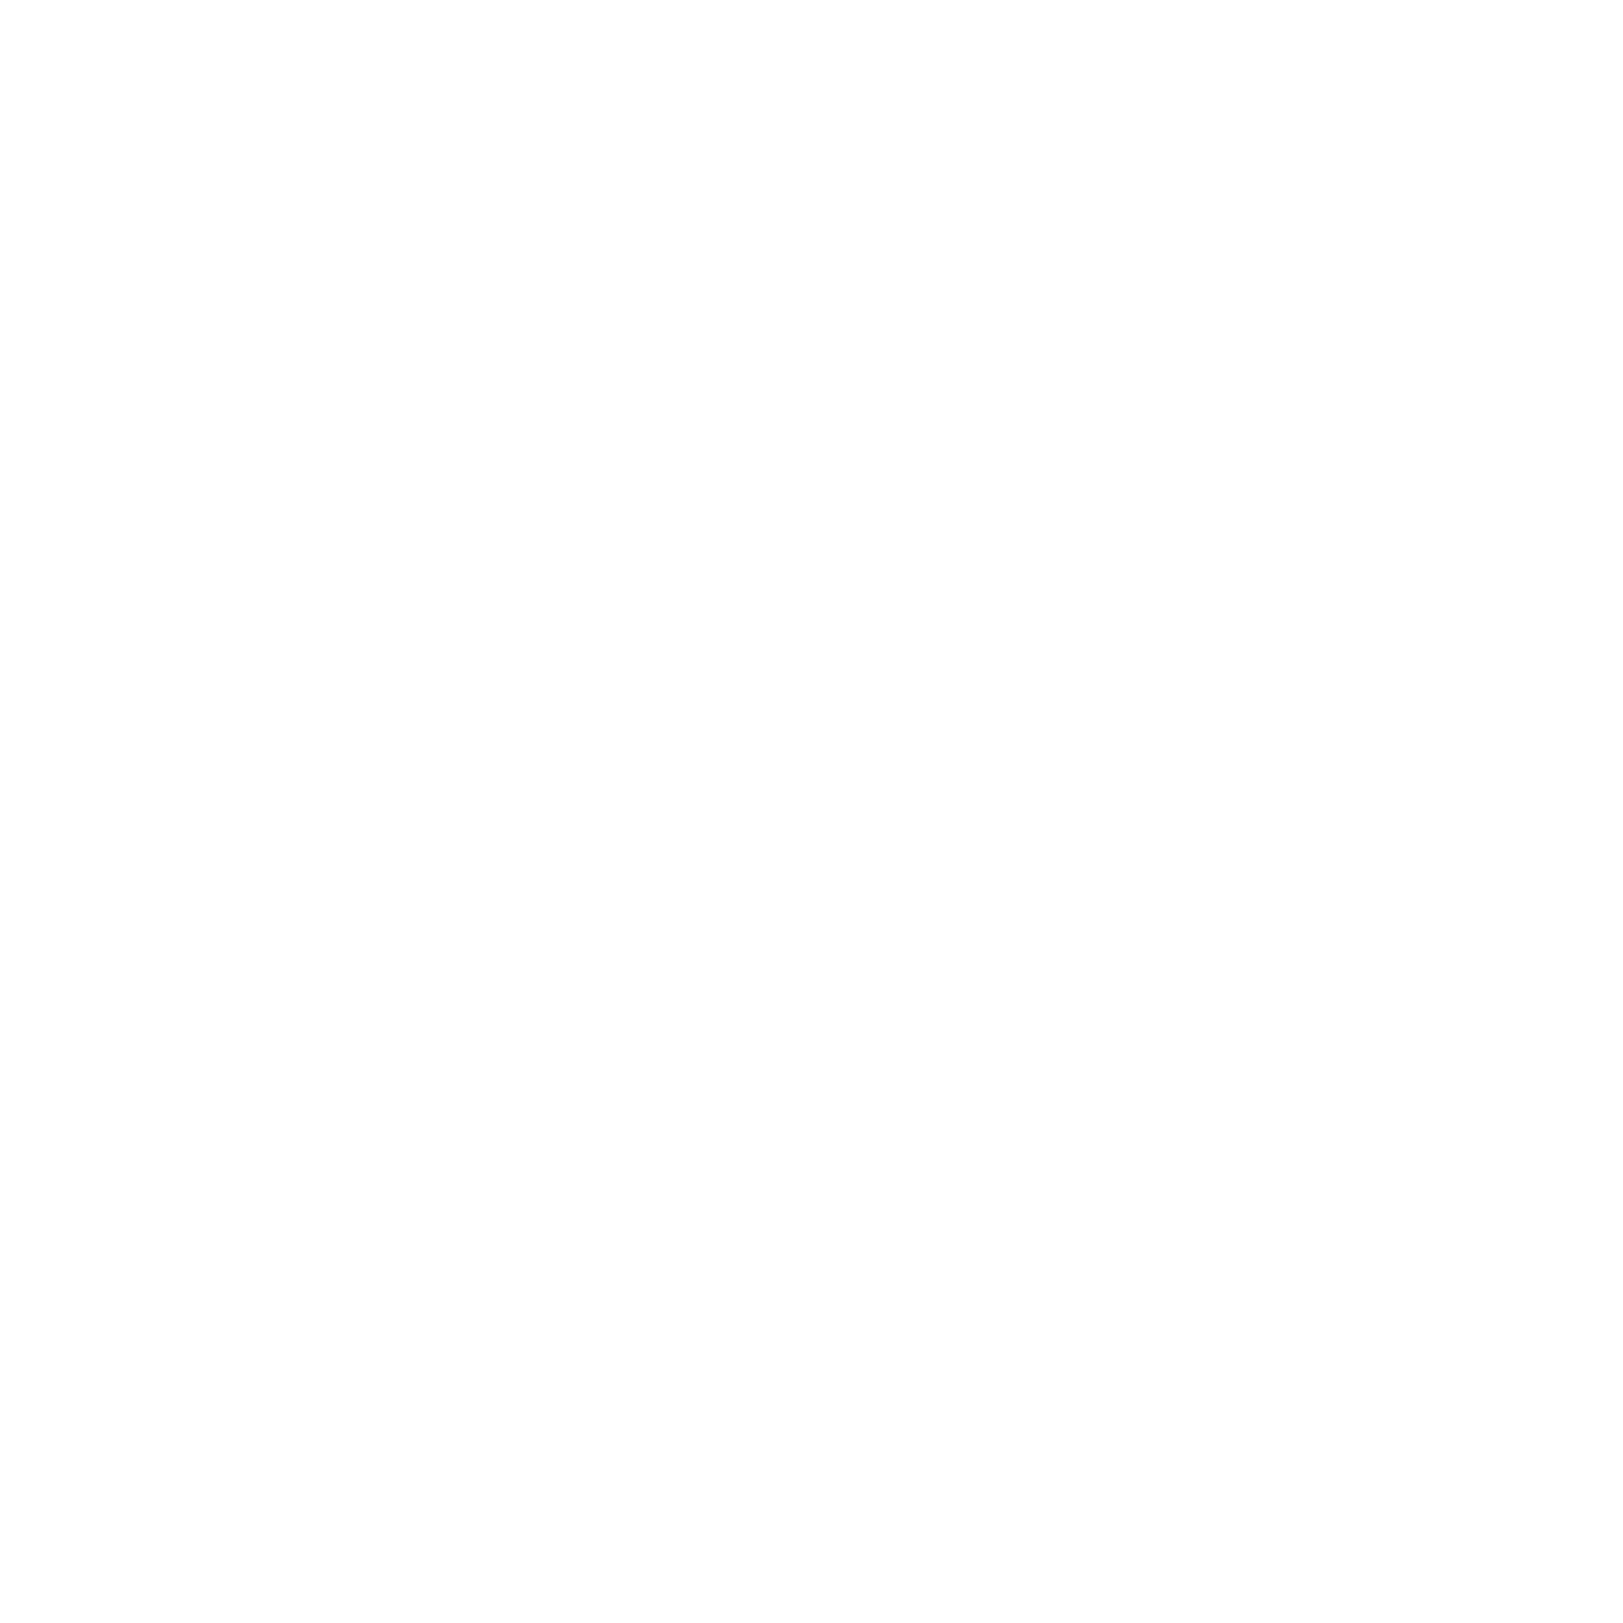 General Motors logo pour fonds sombres (PNG transparent)